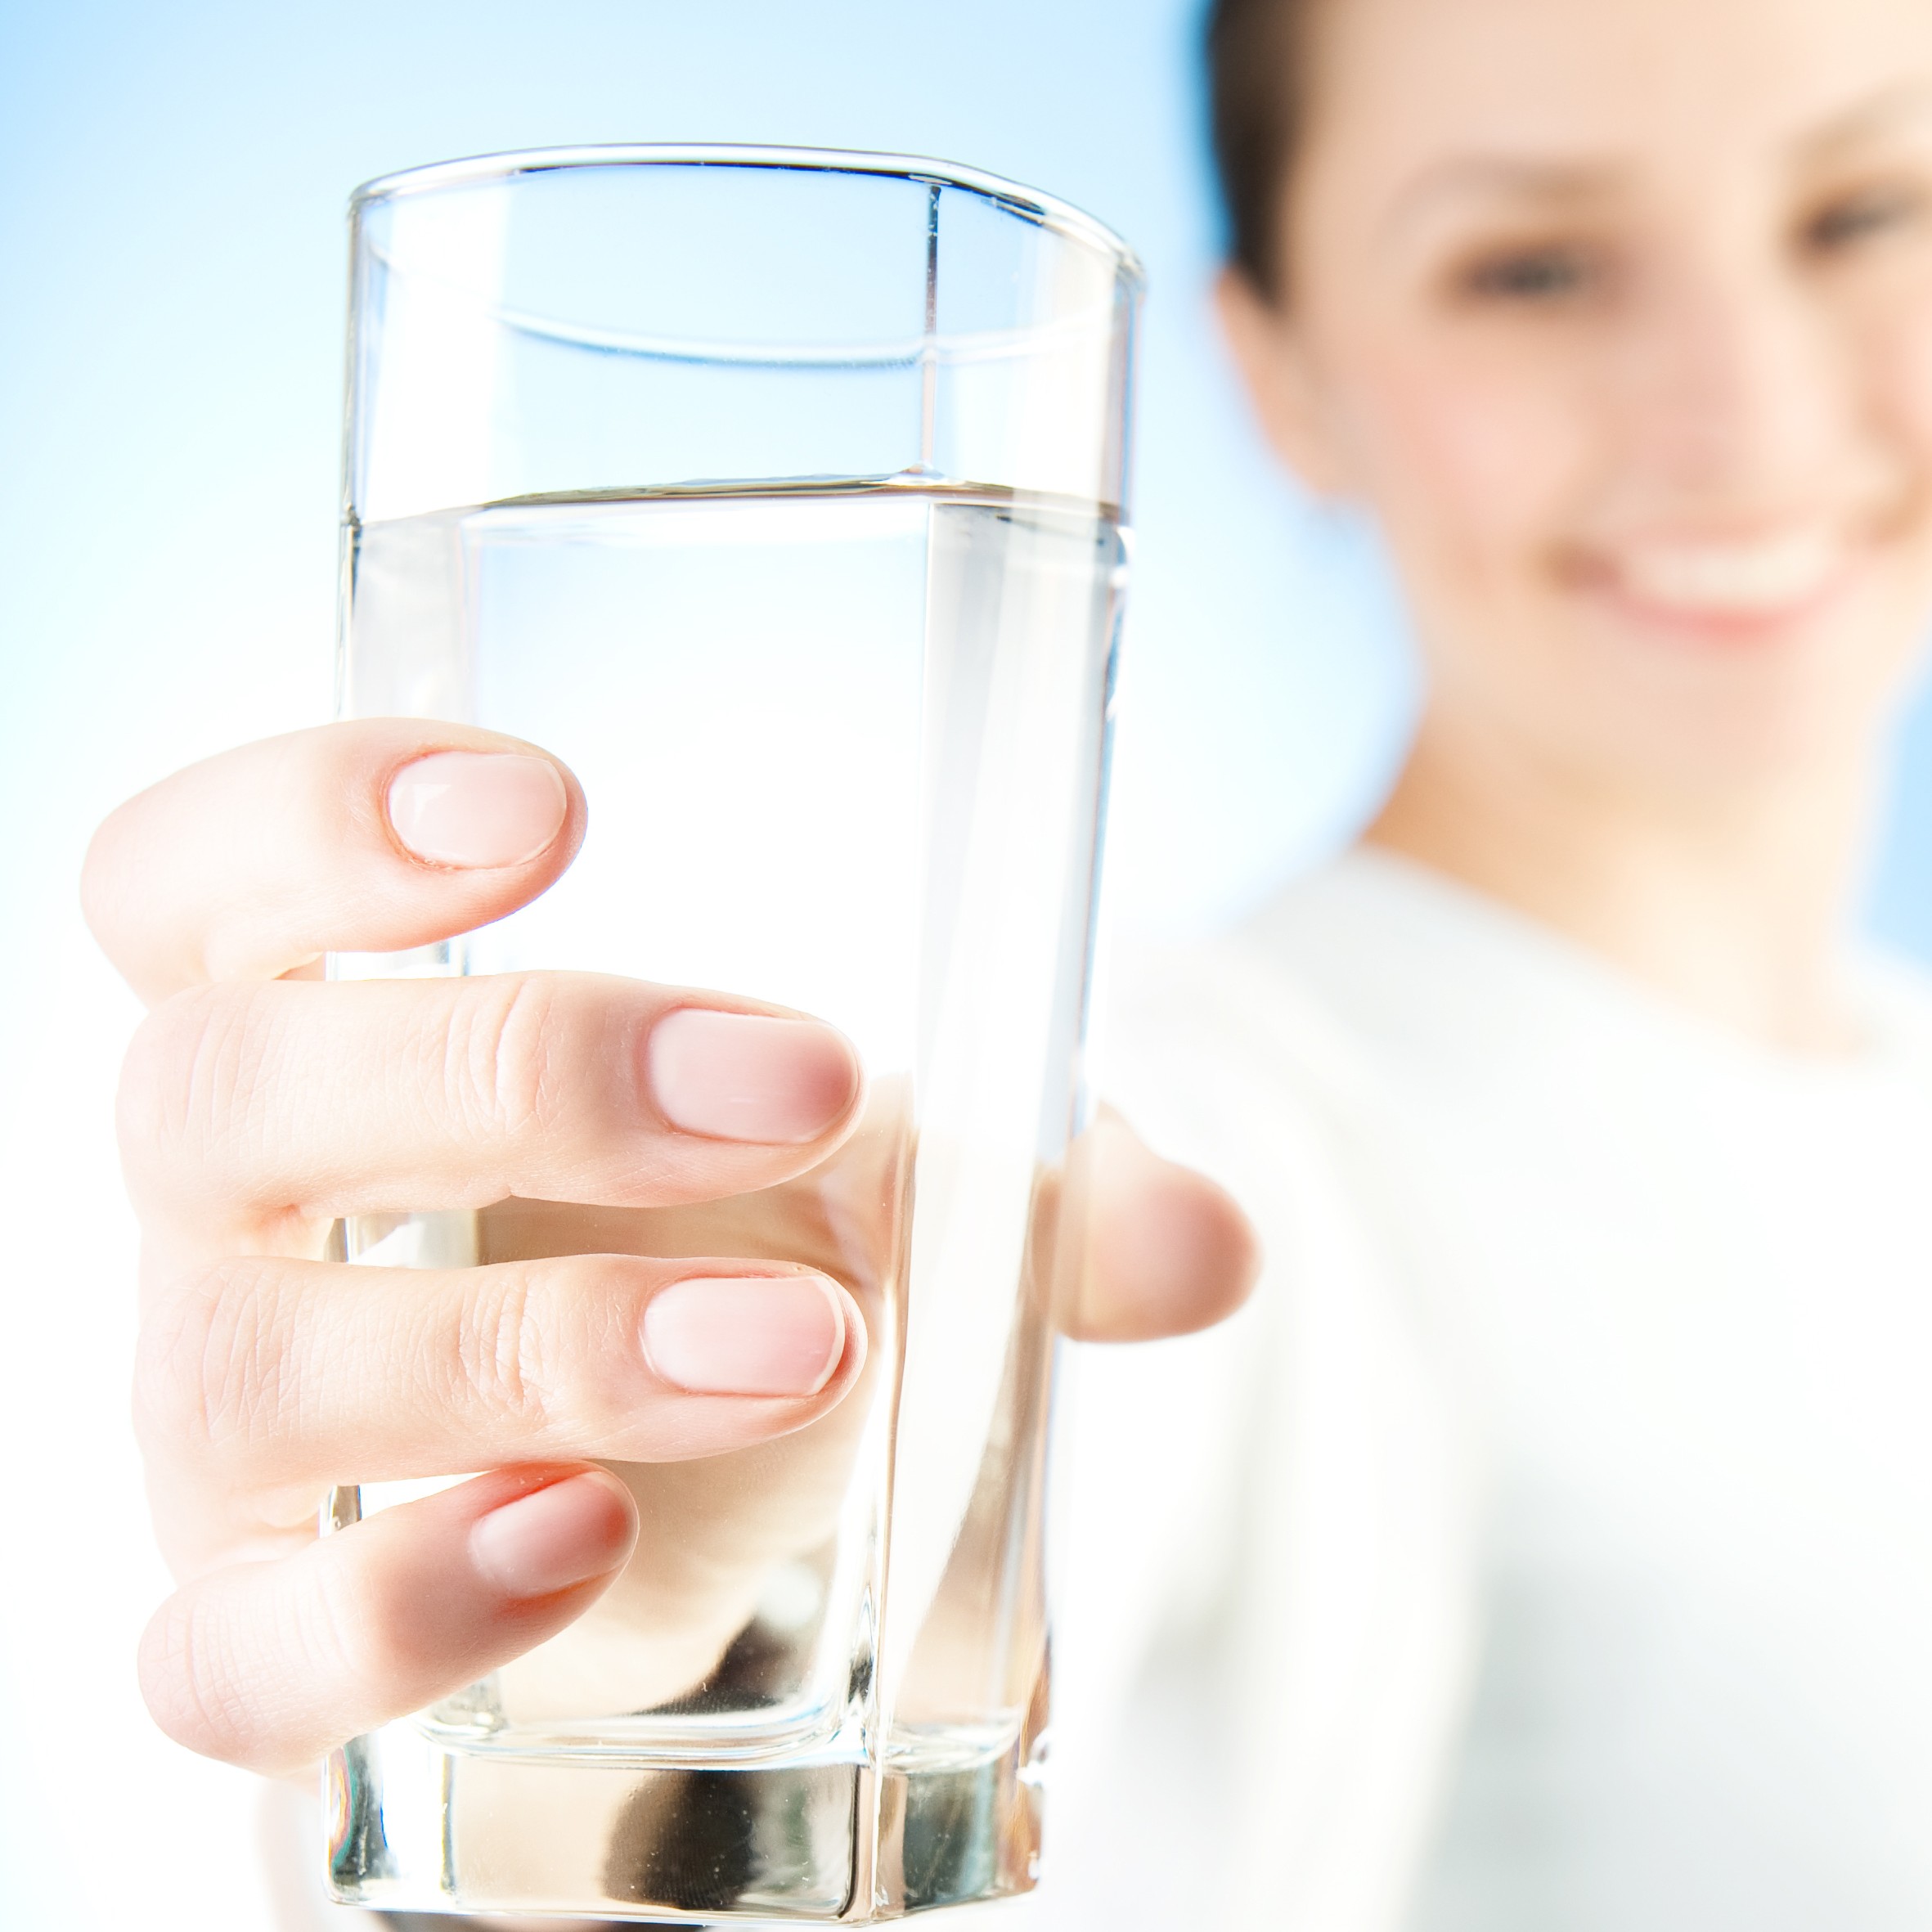 Uống nhiều nước, vì mất nước có thể ảnh hưởng đến độ đàn hồi của da - Ảnh: Shutterstock